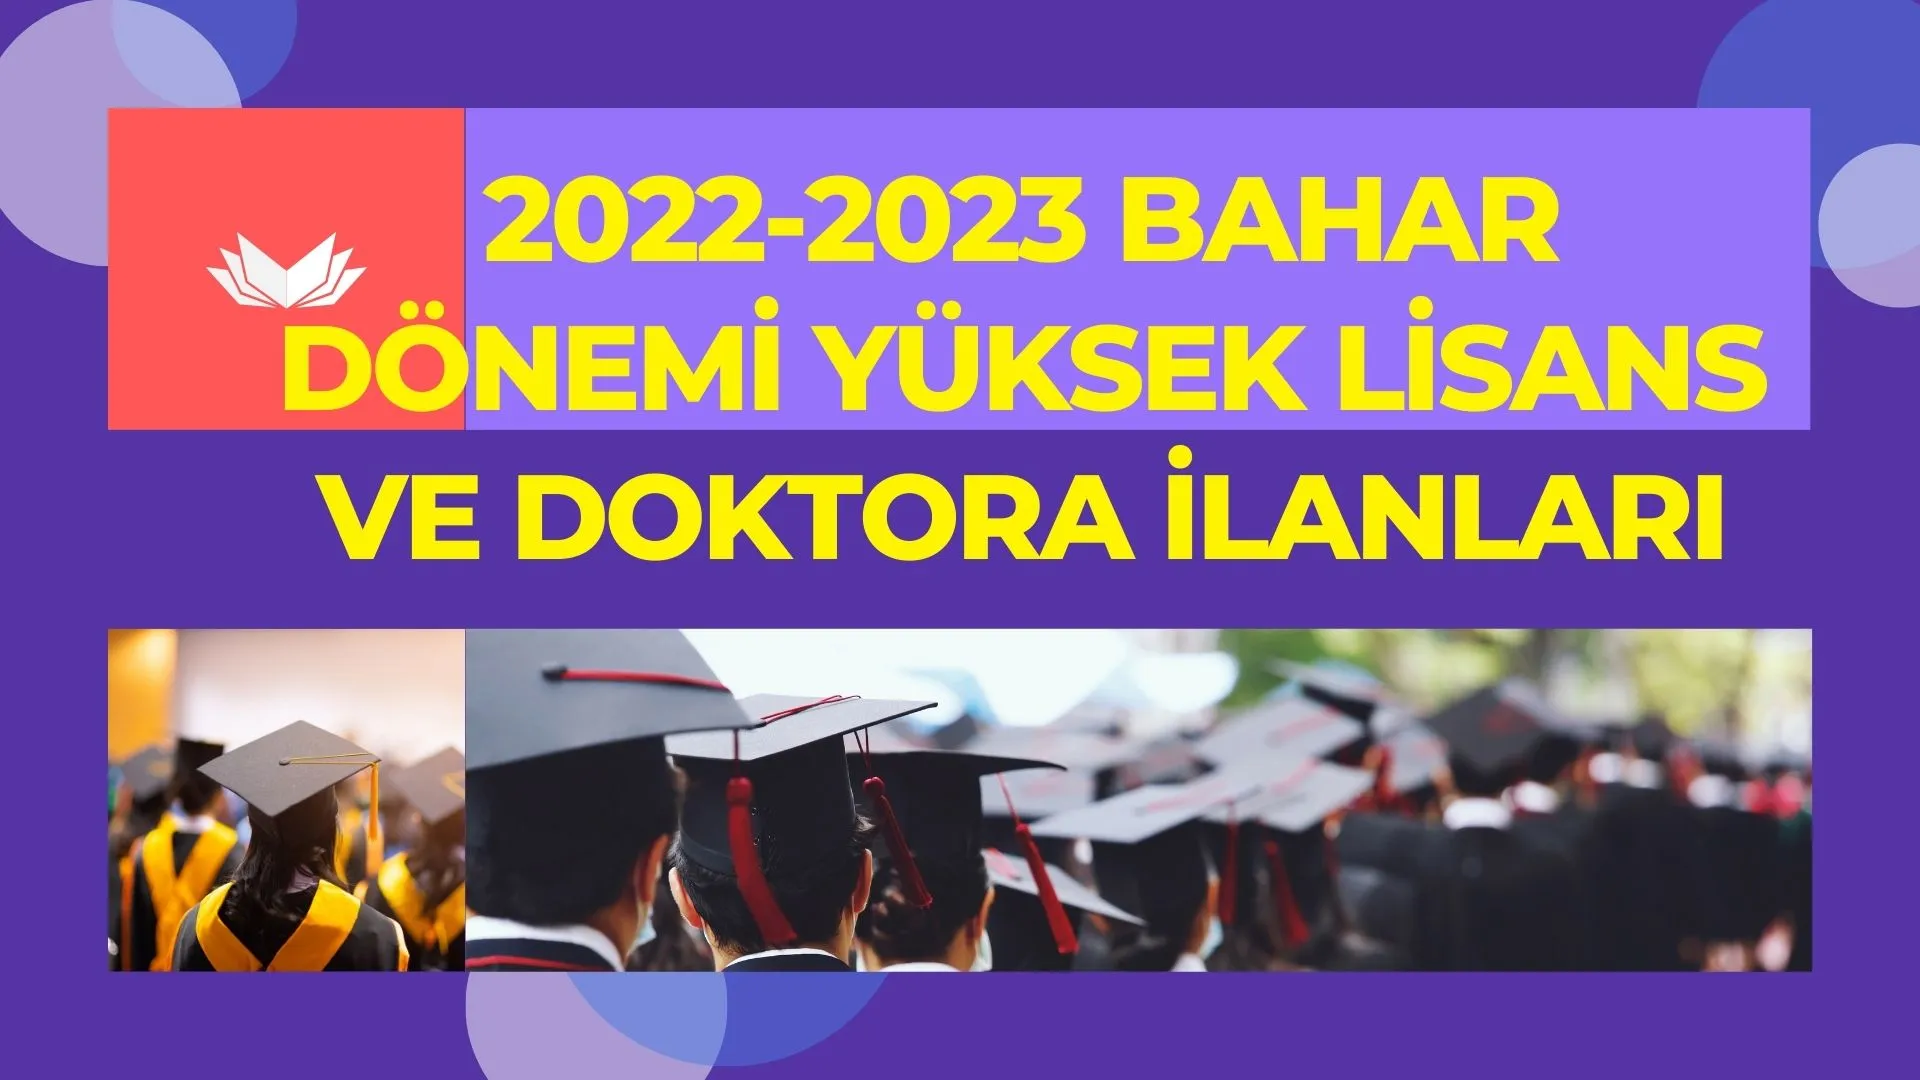 2022-2023 bahar döneminde Devlet Üniversitelerin yüksek lisans ve doktora ilanları yayımlandı.